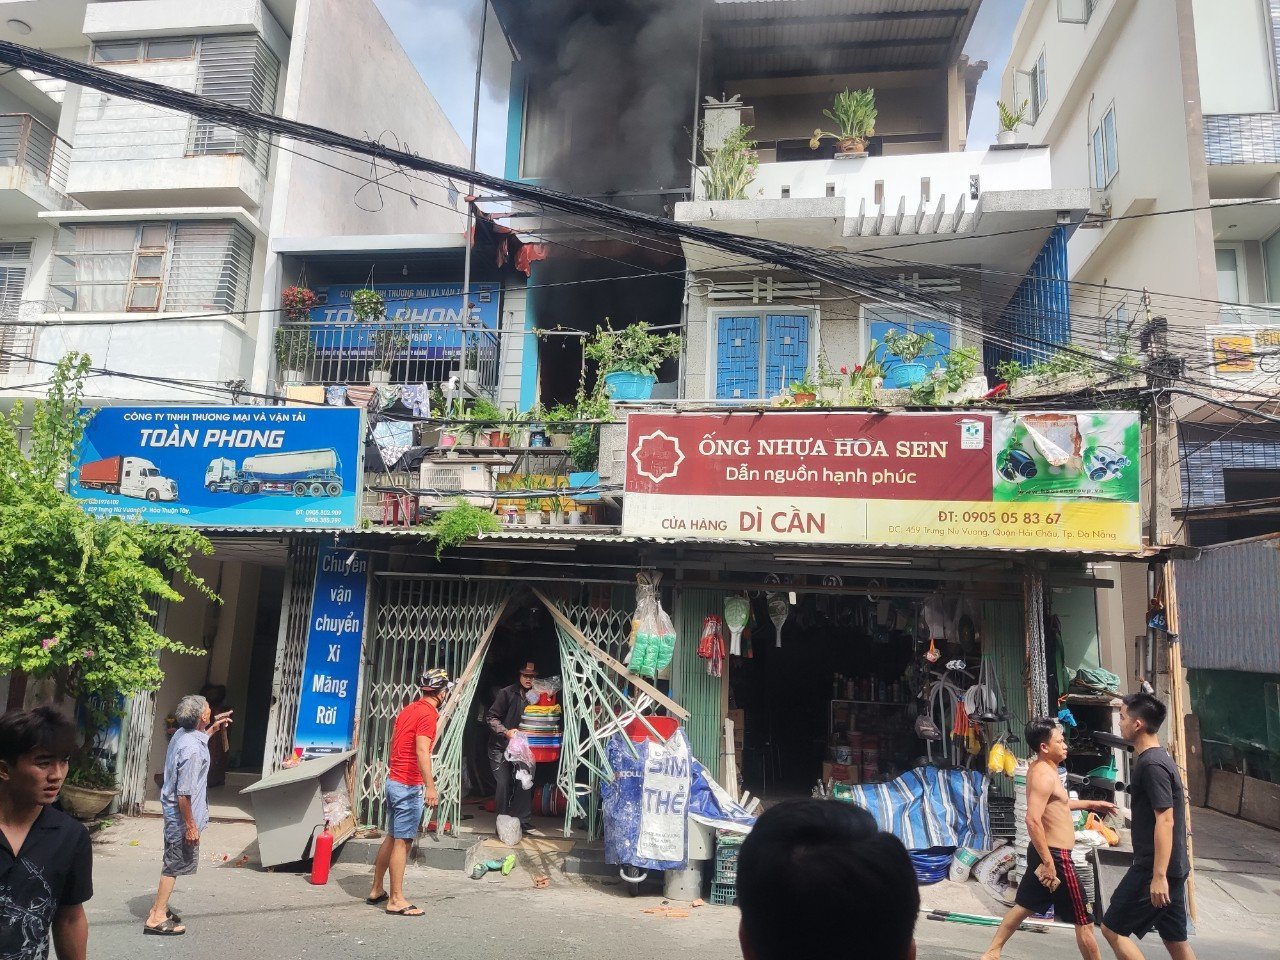 Dù đã từng chứng kiến một vụ cháy nhà và tử vong vào năm 2024, Đà Nẵng vẫn là một thành phố đầy sức sống và hấp dẫn. Nơi đây có những địa điểm du lịch tuyệt vời, những món ăn ngon miệng và một nền văn hoá độc đáo. Hãy đến với hình ảnh để tìm hiểu thêm về sự phát triển không ngừng của Đà Nẵng.